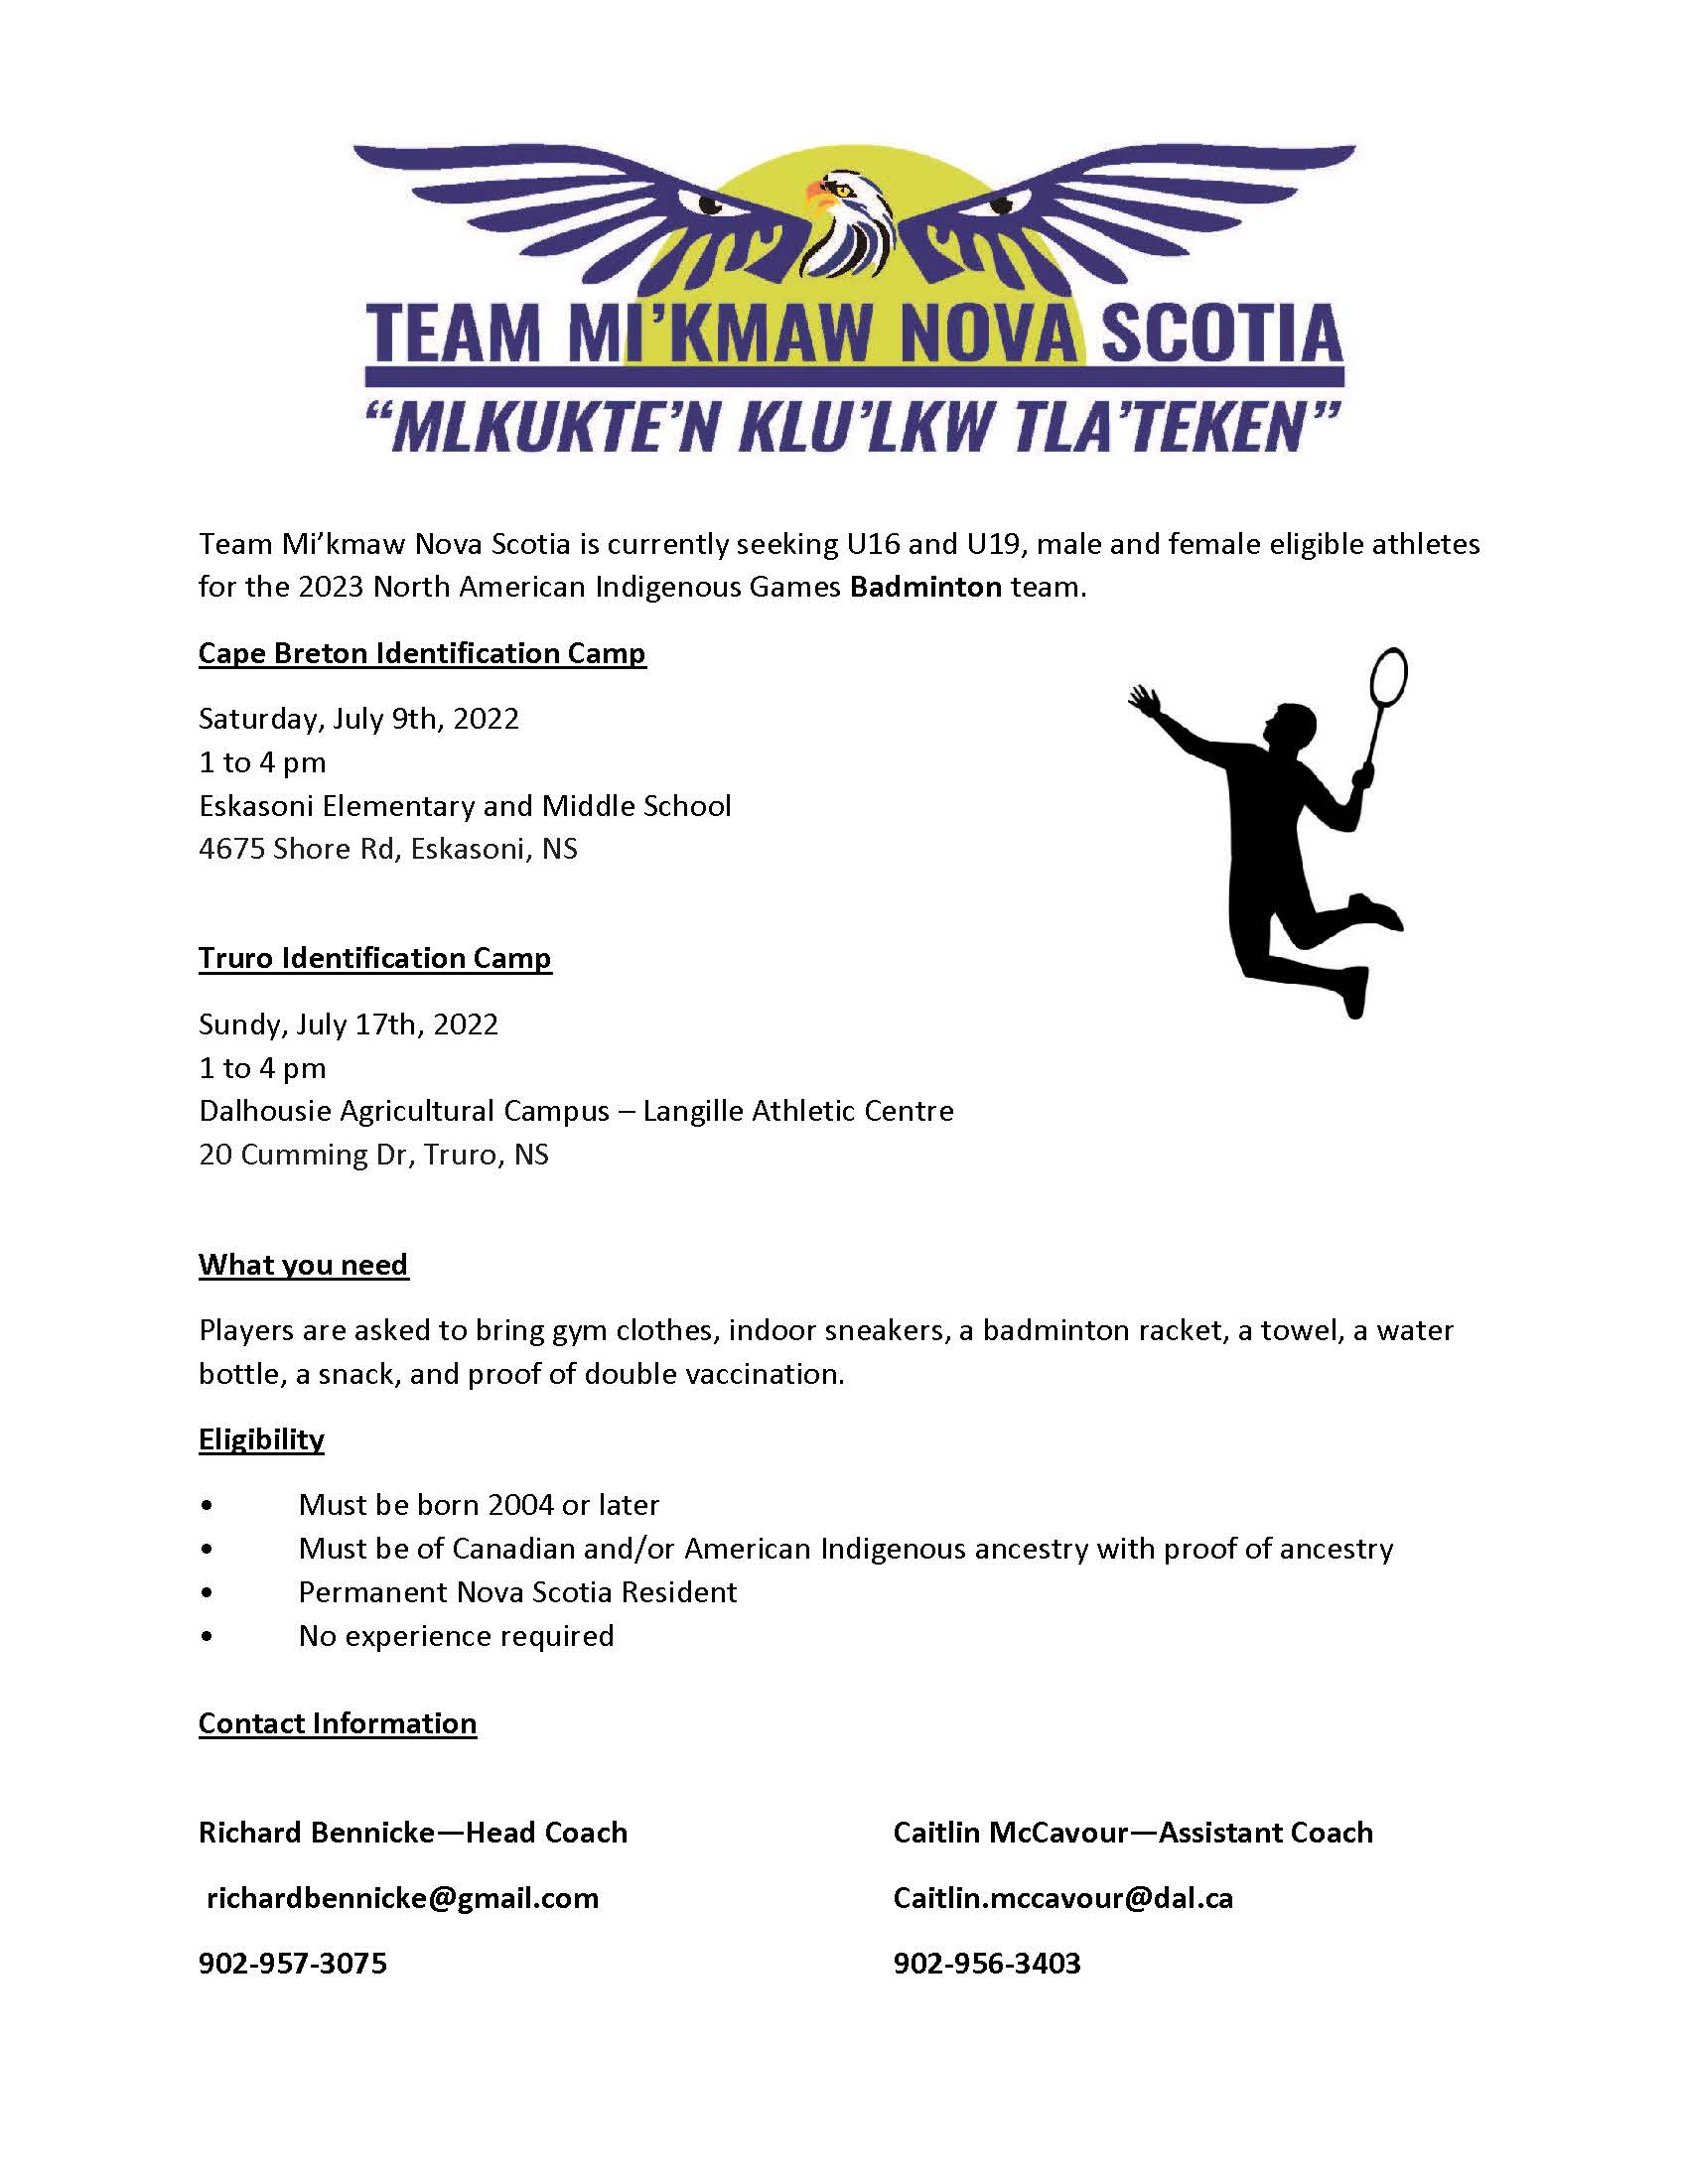 Badminton - Cape Breton and Truro ID Camp